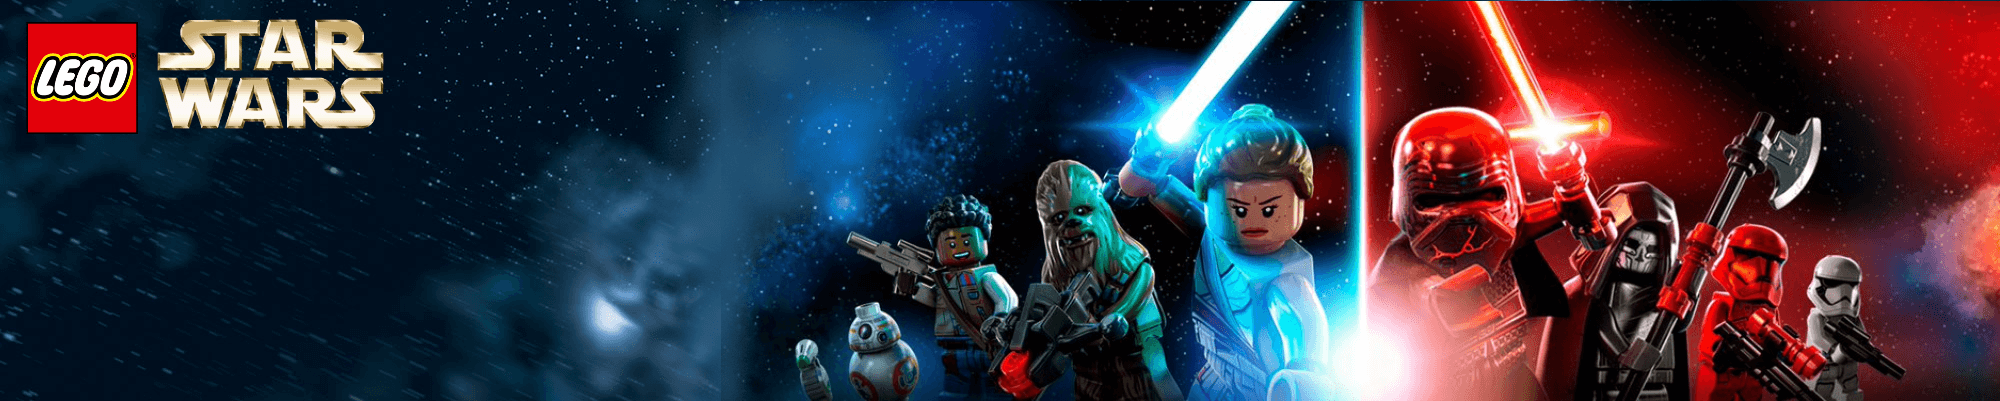 Star Wars LEGO NZ